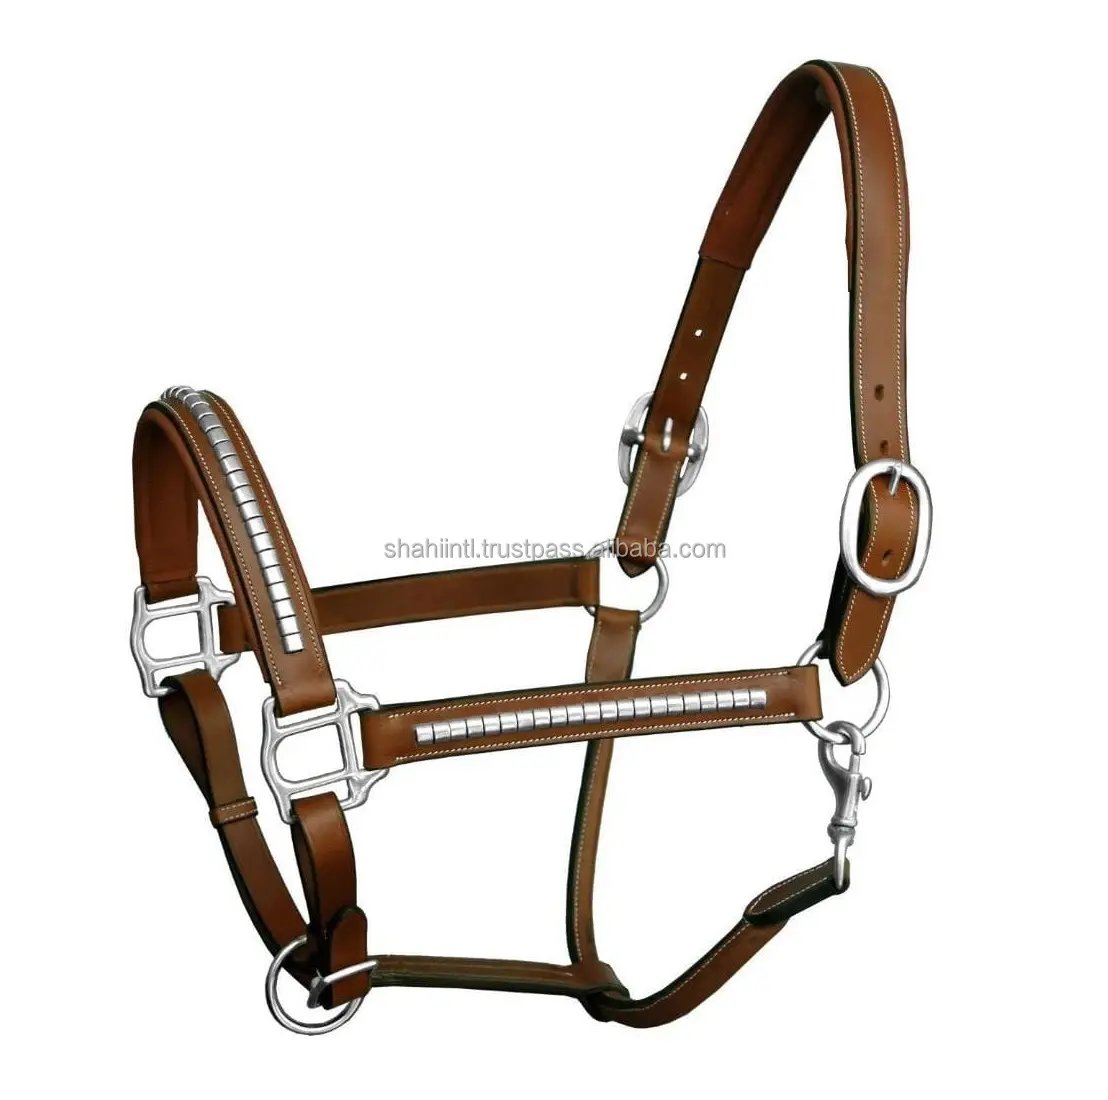 Cabestro de cuero para carreras de caballos ecuestres de alta calidad hecho a medida, ligero, cómodo, herrajes de latón macizo, acolchado de cuero suave